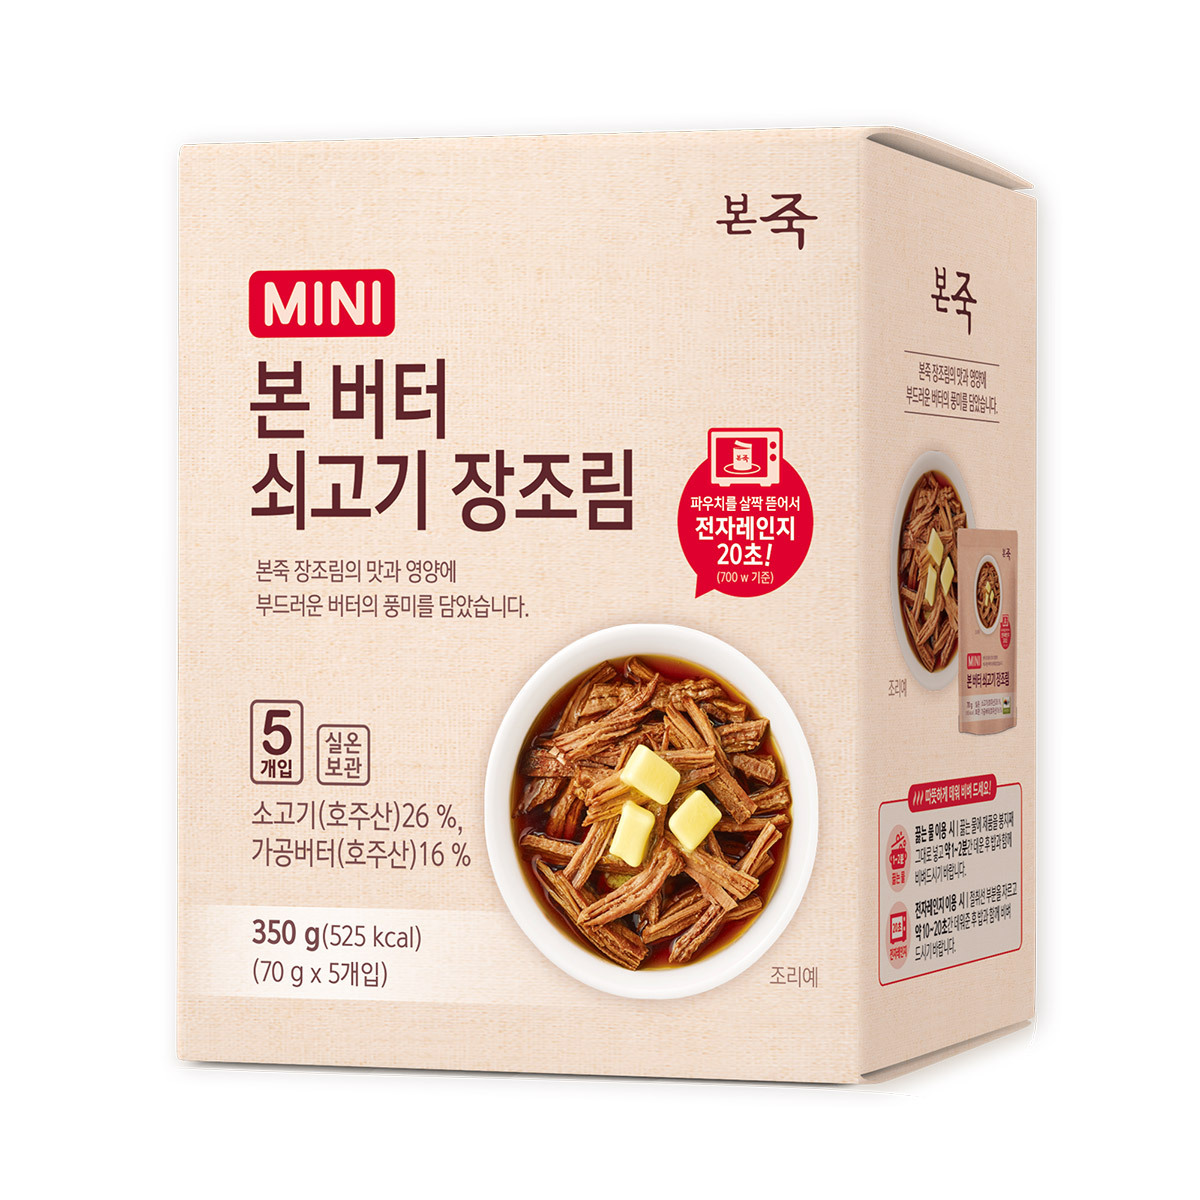 본죽버터 쇠고기 장조림 70g x 5 / 최소구매 2